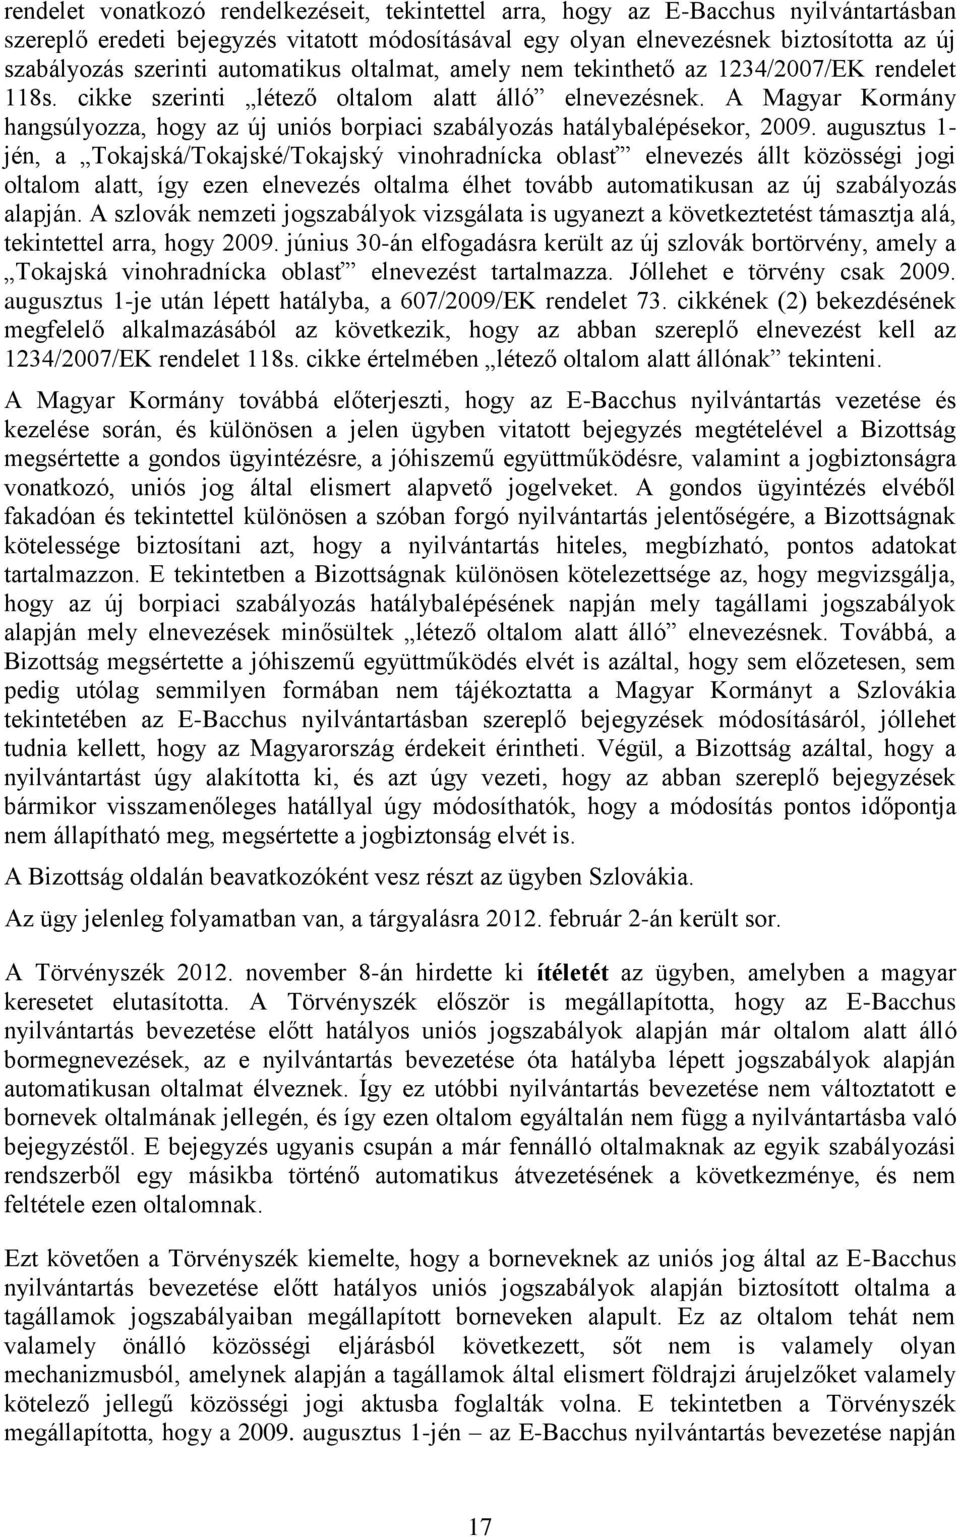 A Magyar Kormány hangsúlyozza, hogy az új uniós borpiaci szabályozás hatálybalépésekor, 2009.